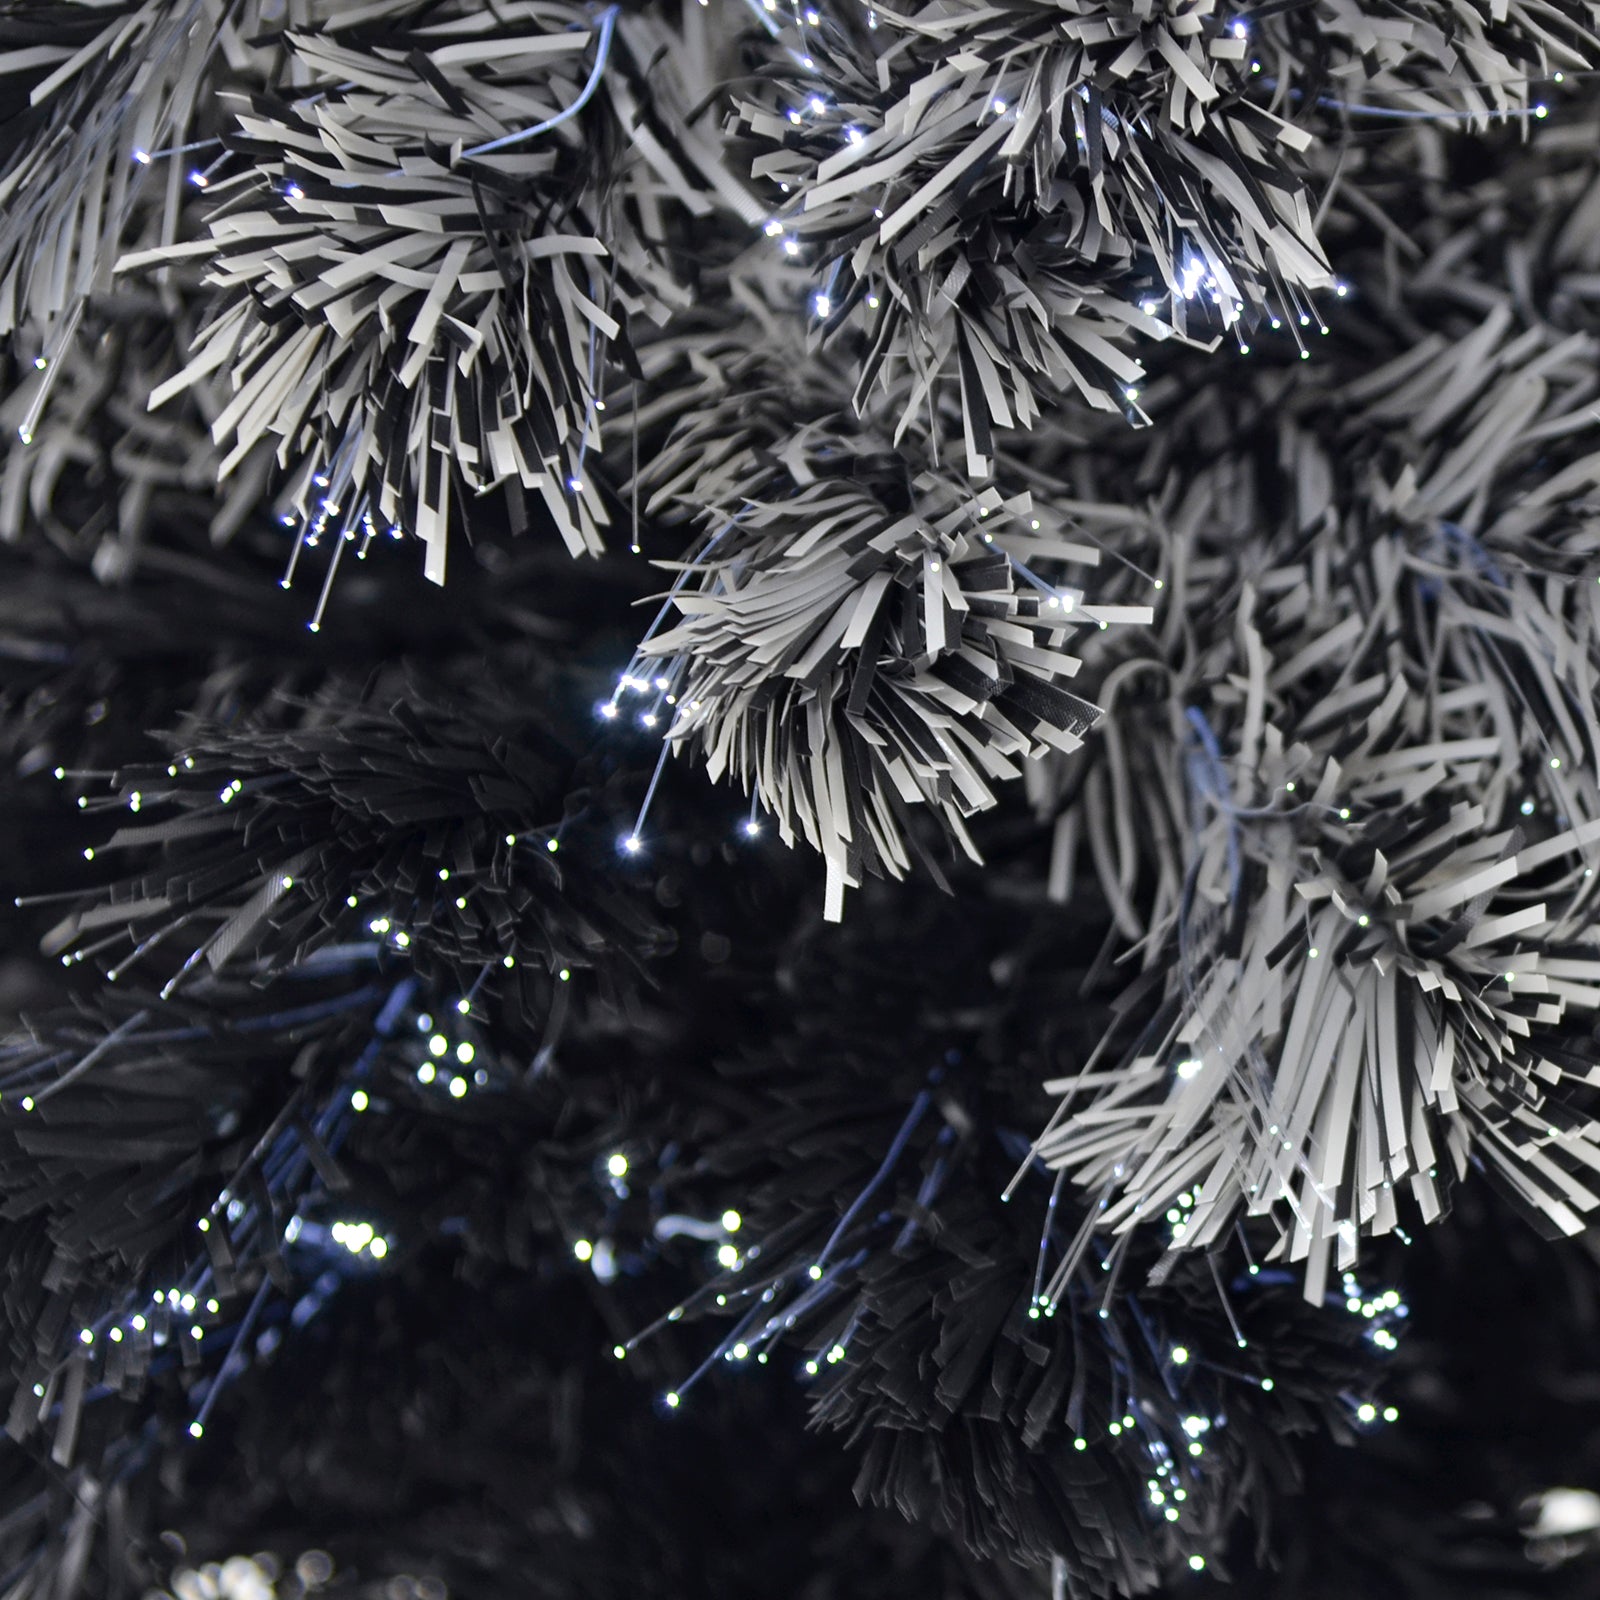 Mr Crimbo 6ft Fibre Optic Pencil Christmas Tree Black White - MrCrimbo.co.uk -XS6426 - -6ft christmas tree